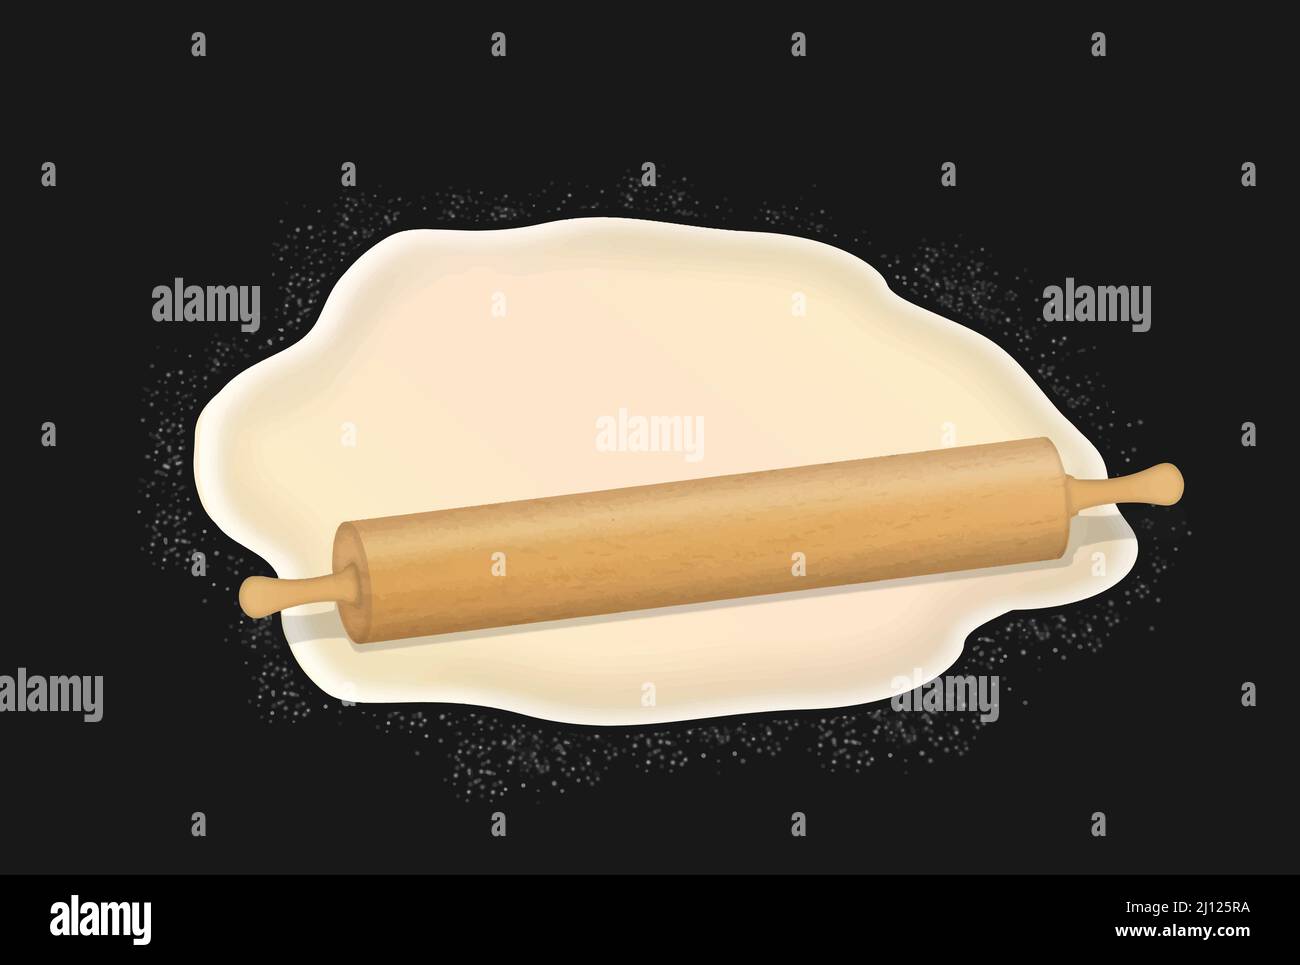 Spilla e pasta sfoglia con farina su sfondo scuro. Design concettuale per l'illustrazione vettoriale della cottura, della pizza o del pane Illustrazione Vettoriale